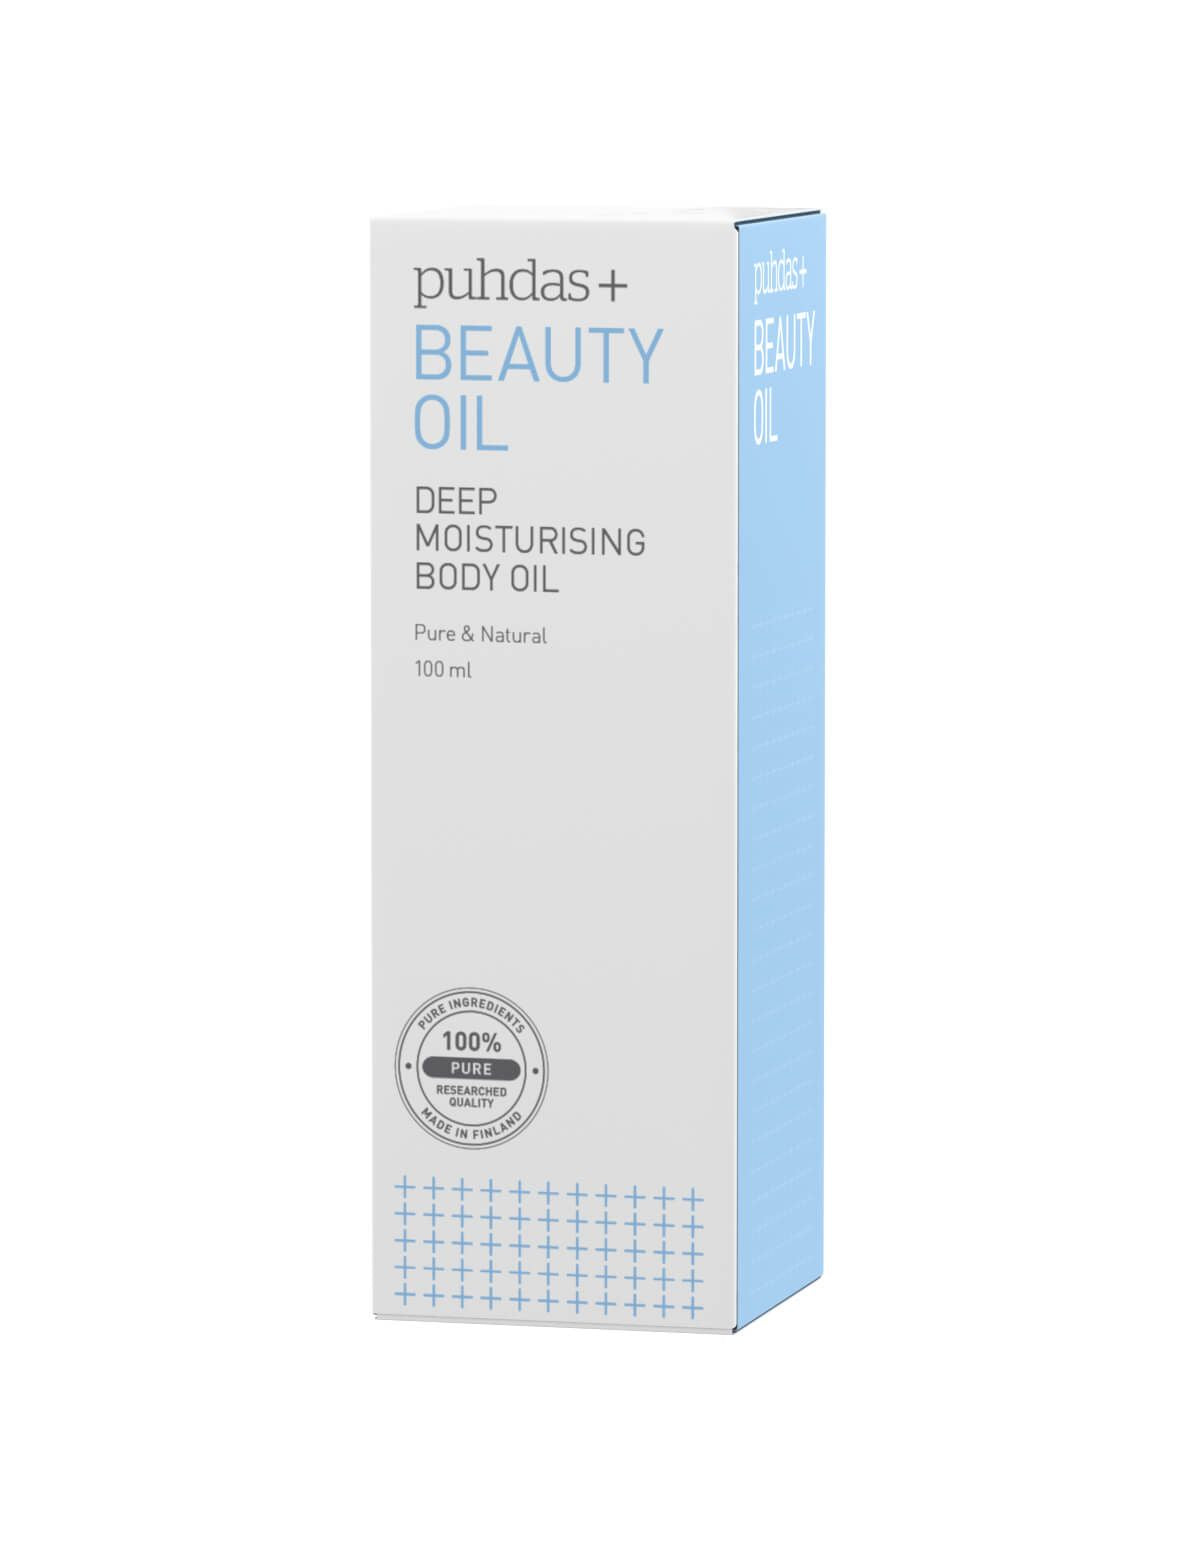 Puhdas+ Beauty Oil - Body oil - Kauneusöljy vartalolle 100 ml